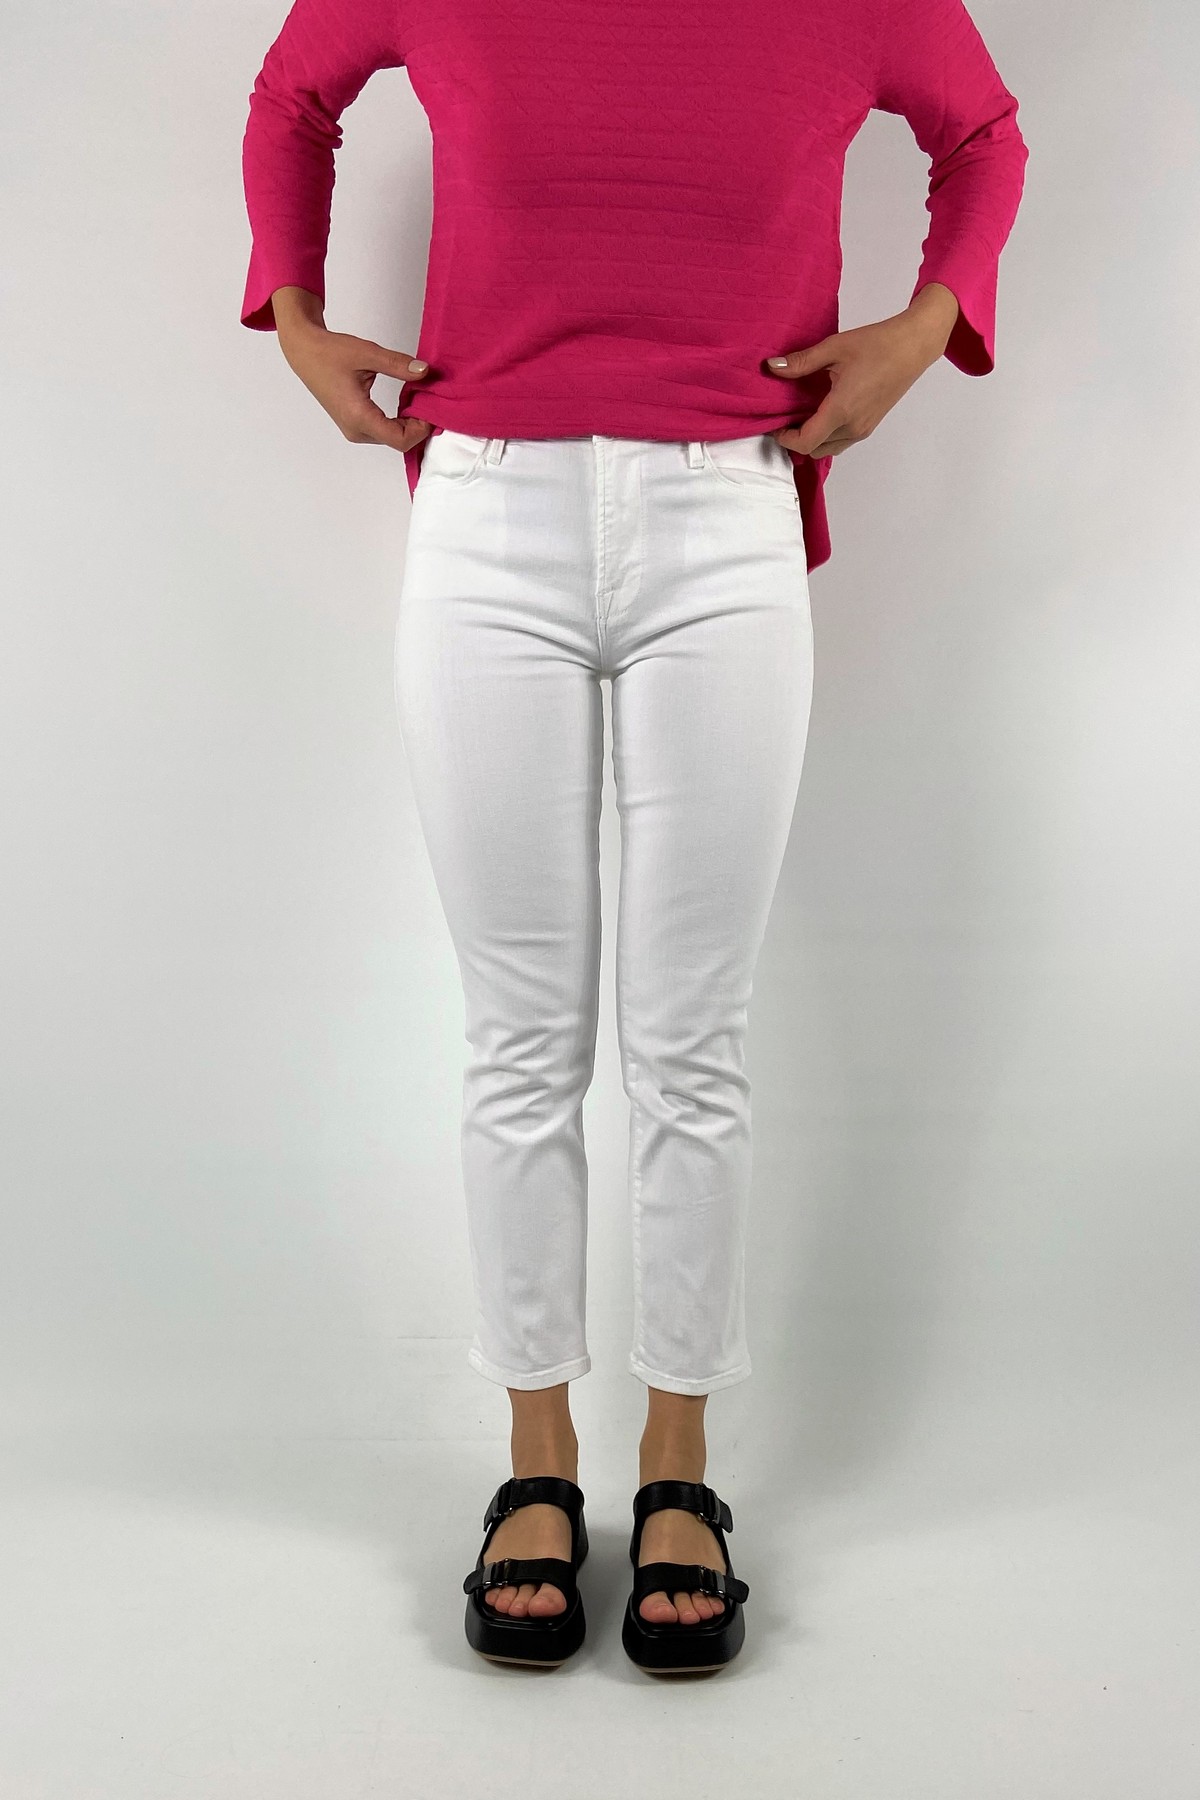 jeans straight uitgerafeld in de kleur mediumblue van het merk Frame